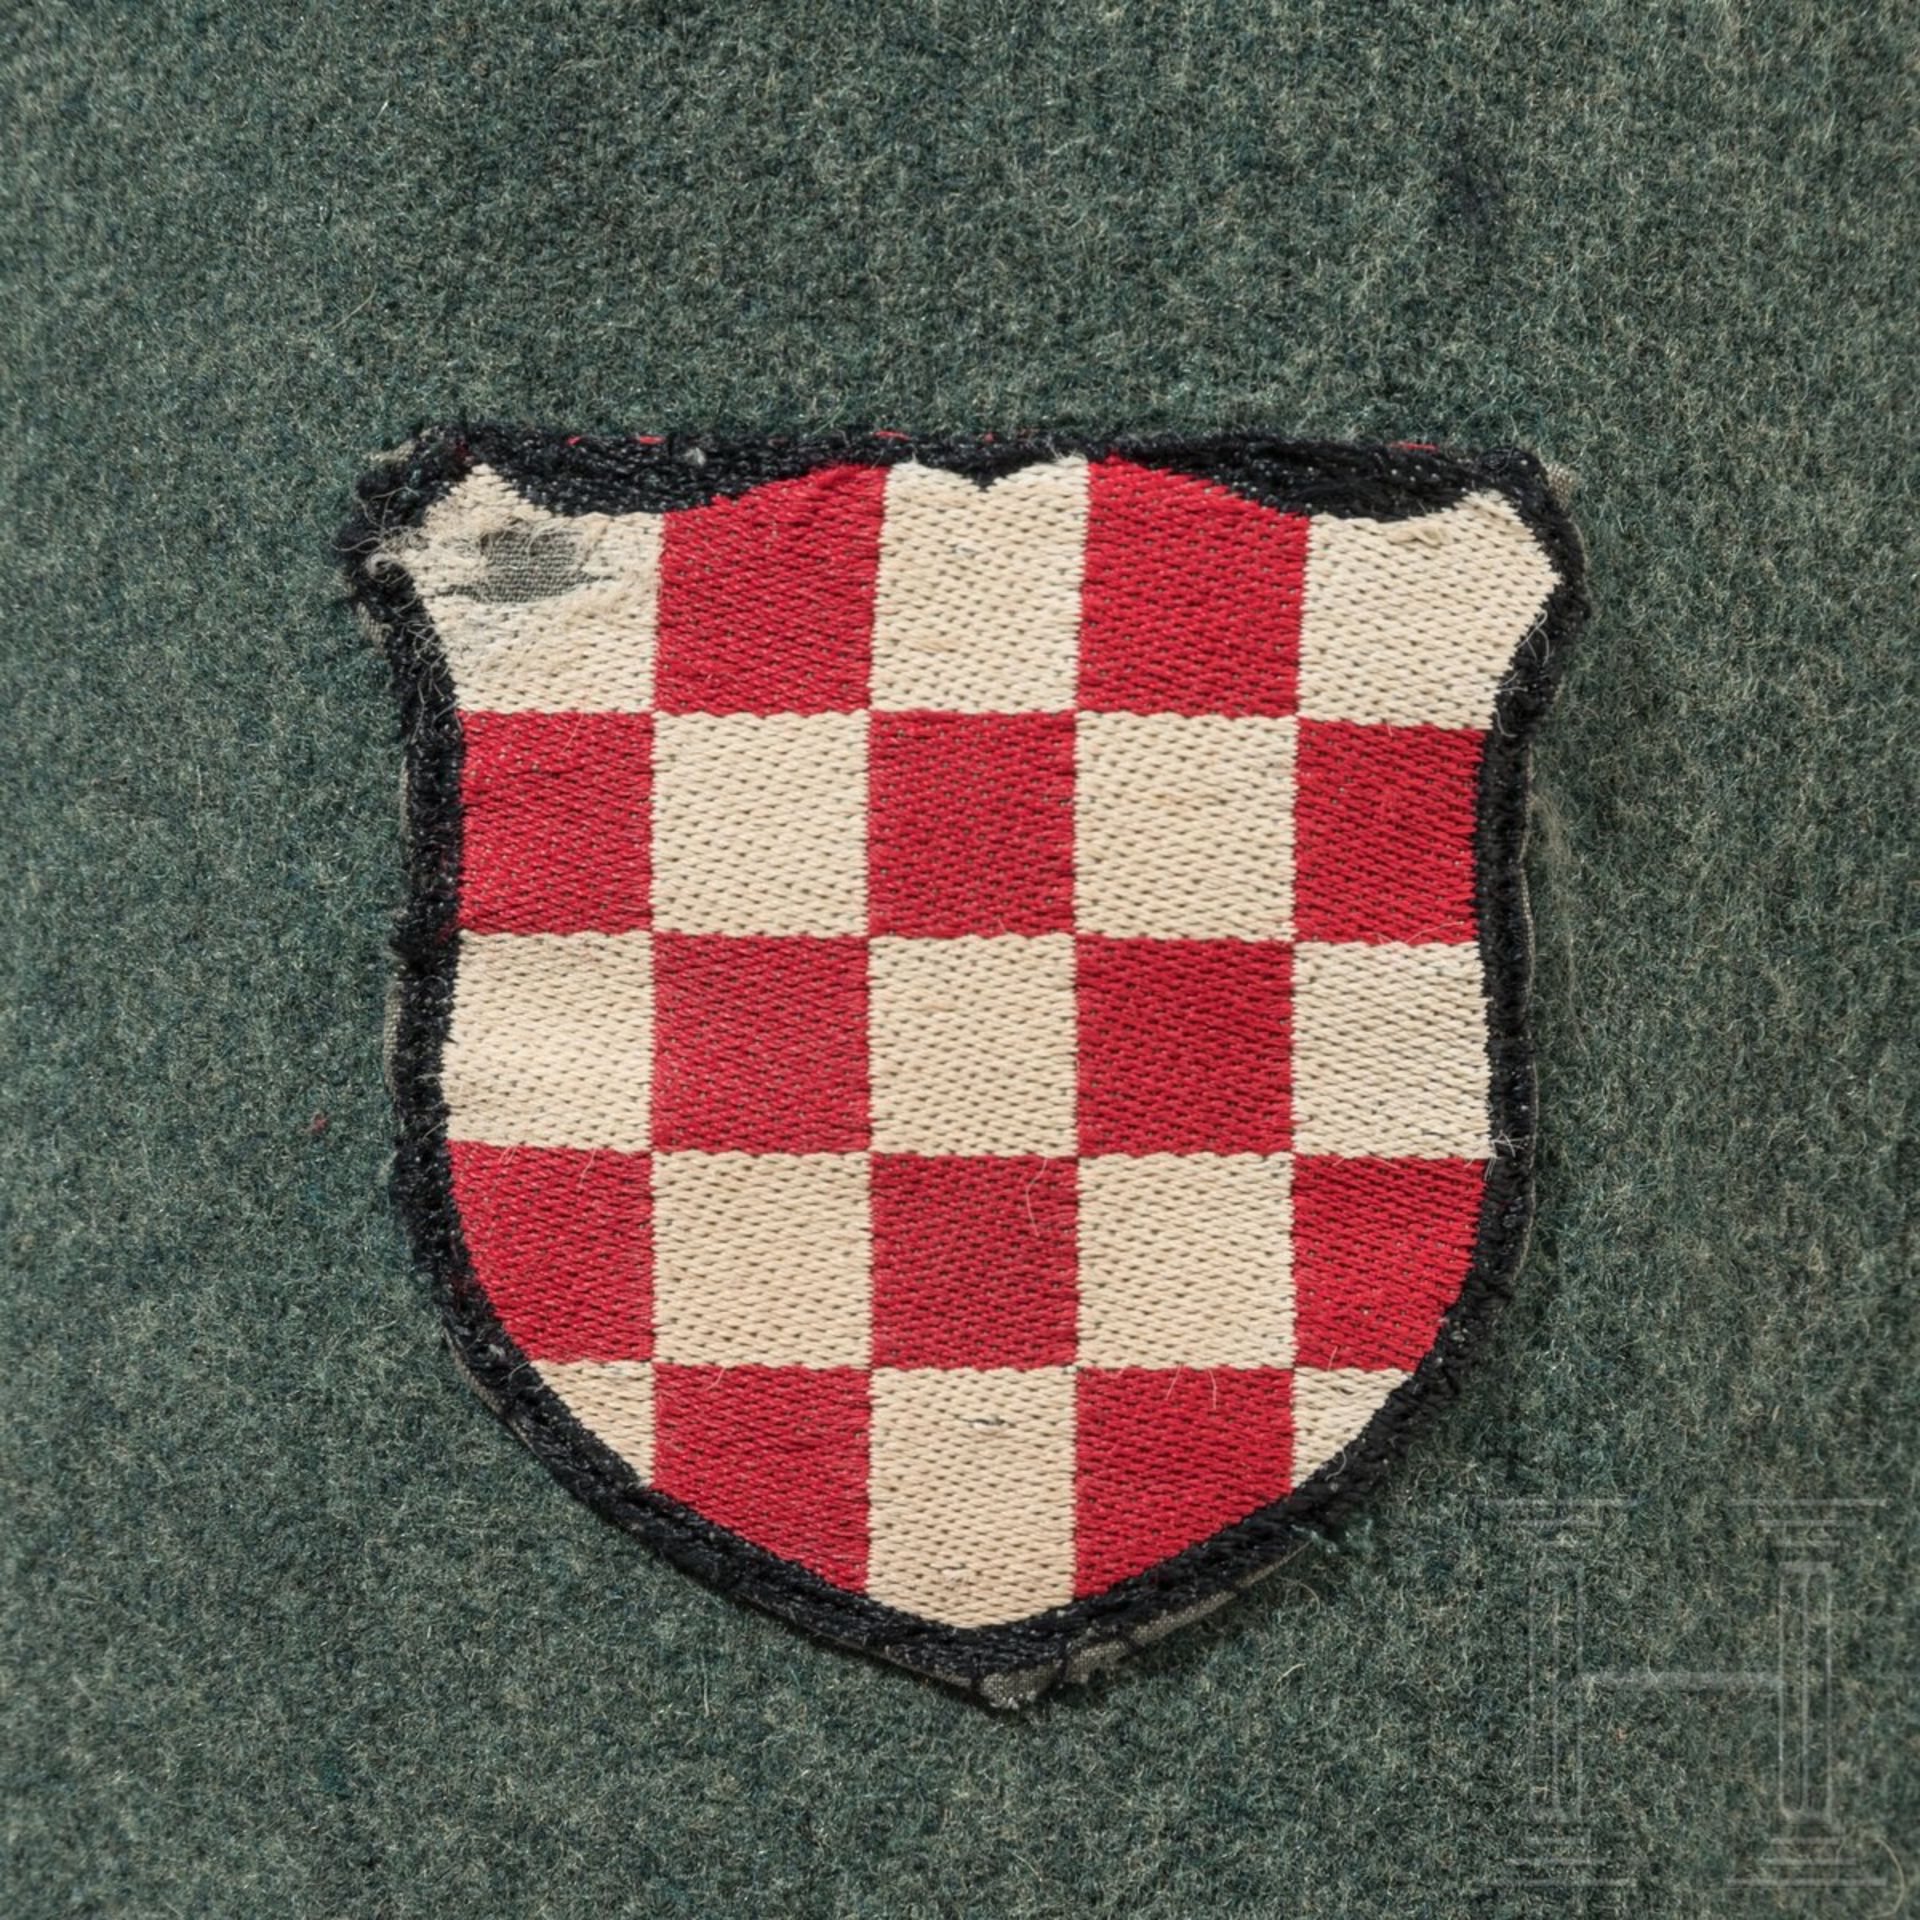 Feldbluse für einen Wachtmeister der kroatischen Schutzpolizei - Bild 6 aus 8